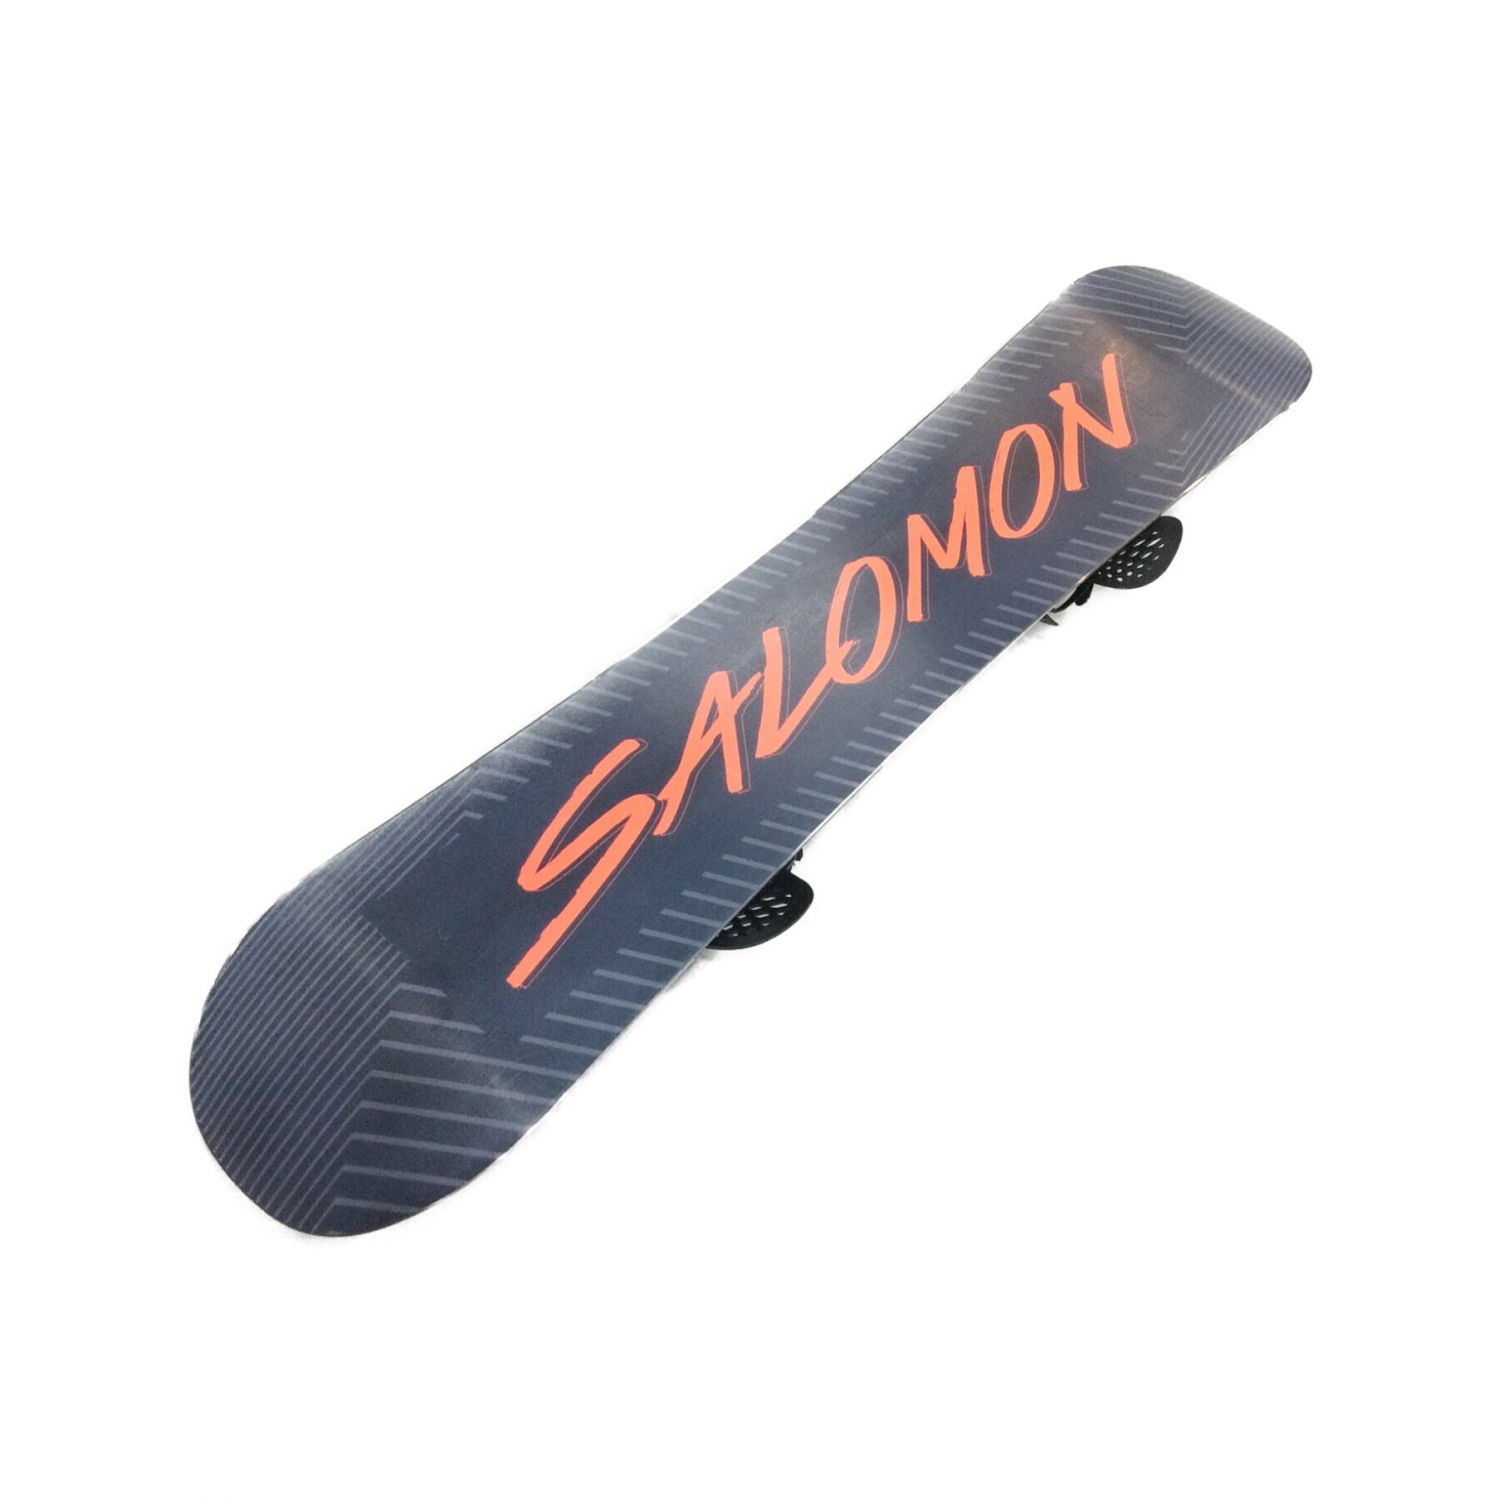 SALOMON (サロモン) スノーボード 143cm 19-20年 4X4 サンドイッチ構造